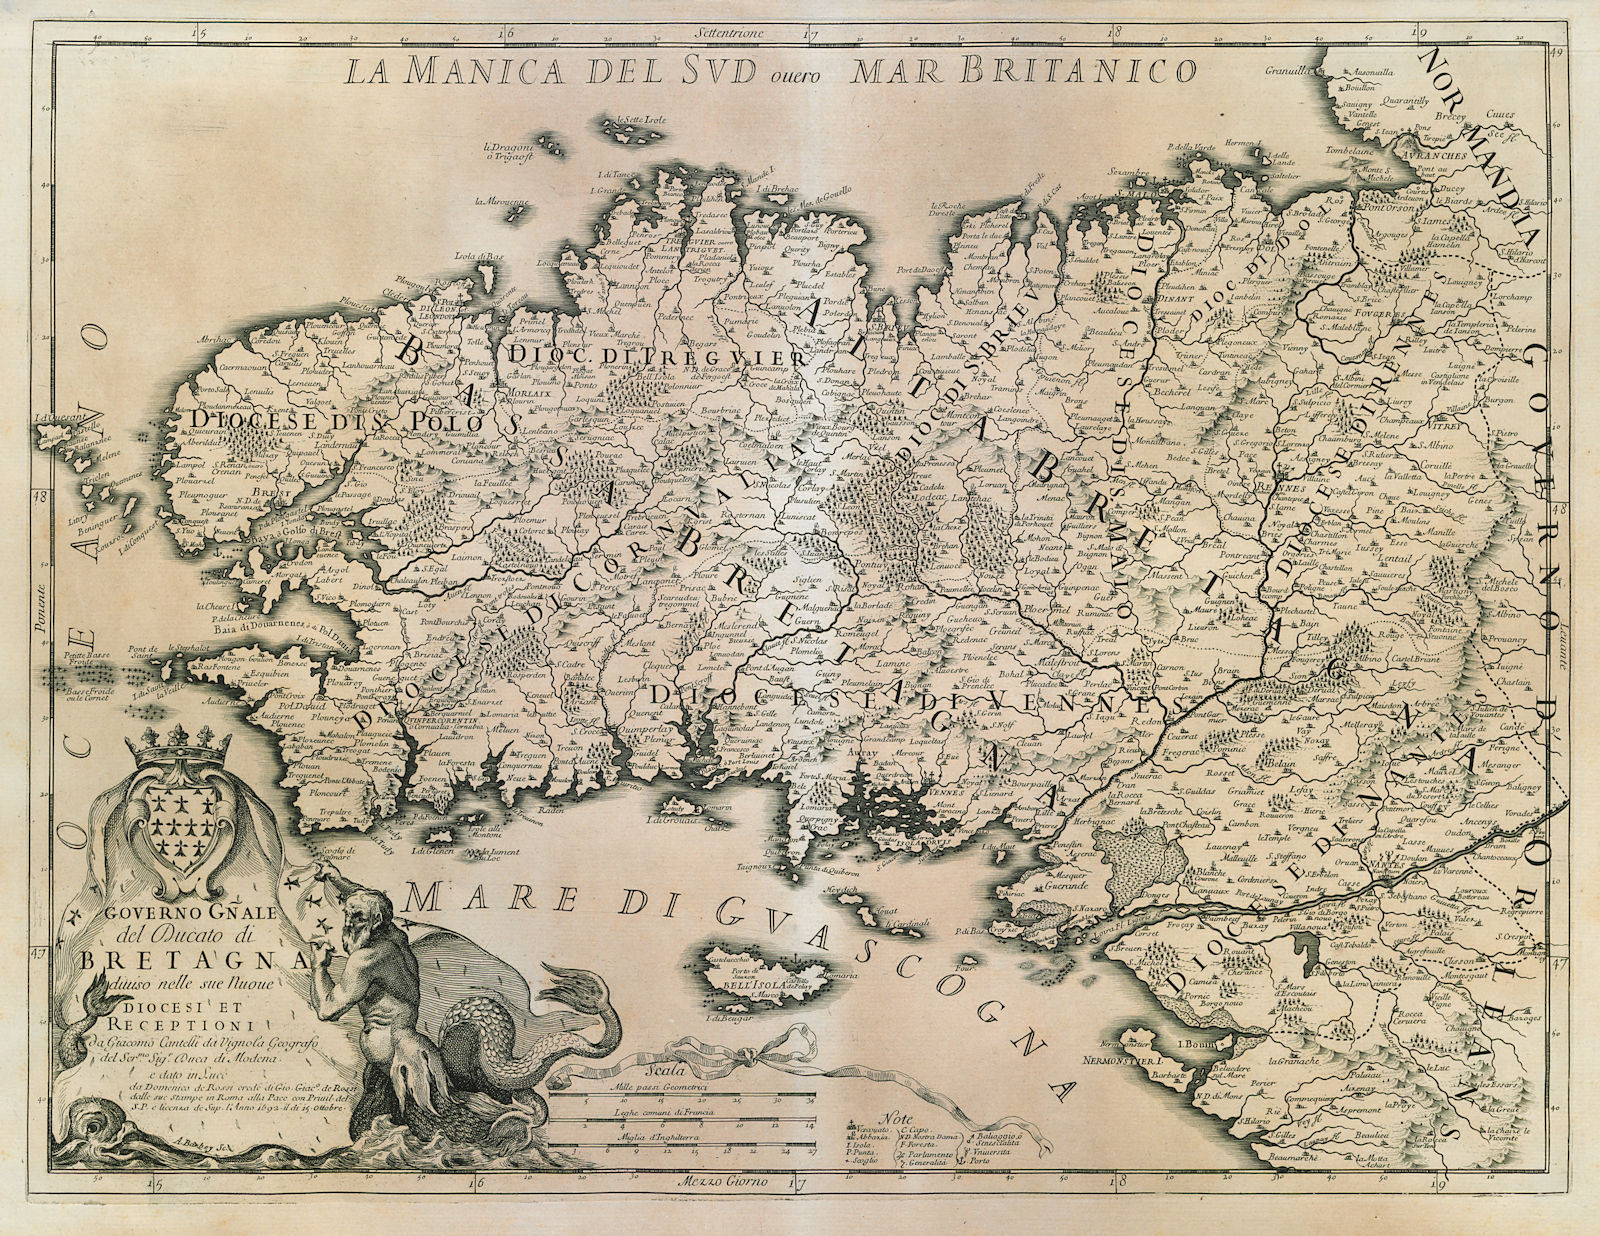 Associate Product Governo Gnale. del Ducato di Bretagna. Brittany. DE ROSSI / CANTELLI 1692 map